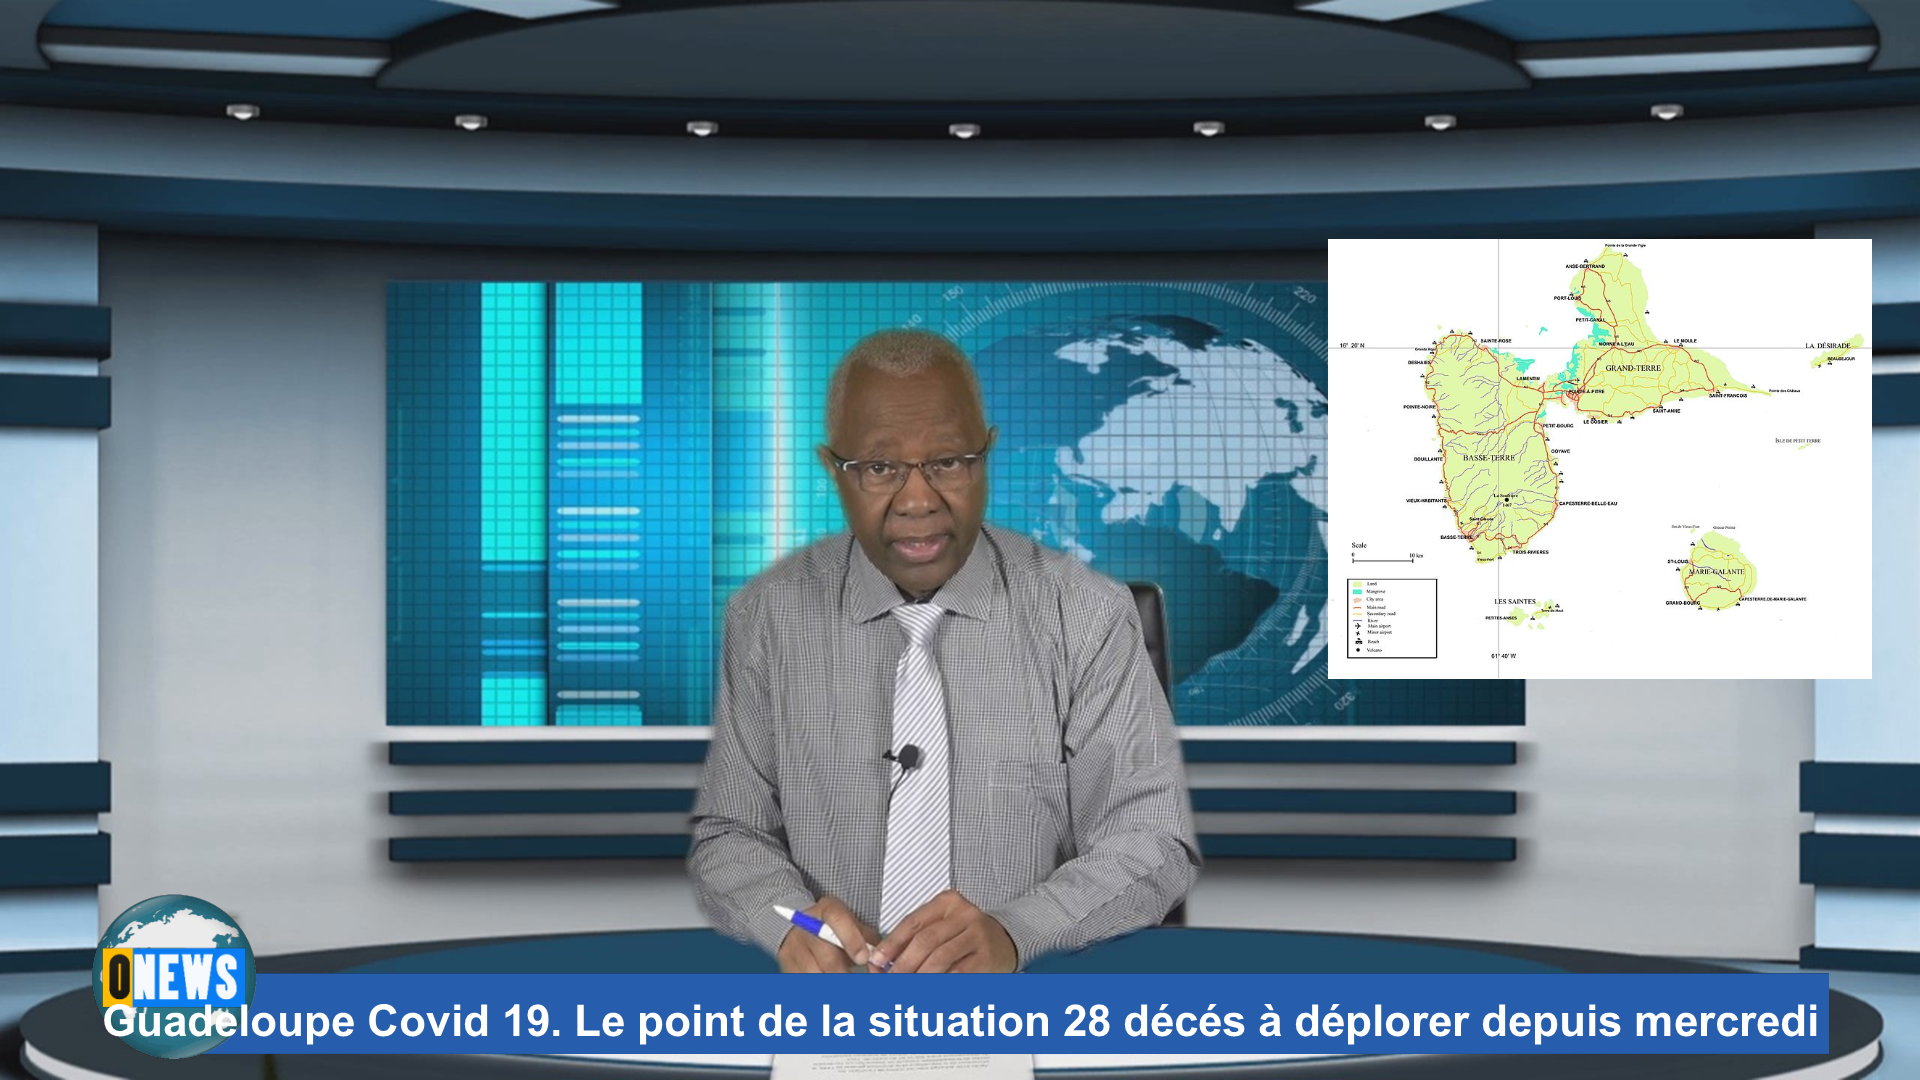 [Vidéo] Guadeloupe Covid 19. Le point de la situation. 28 décés à déplorer depuis mercredi